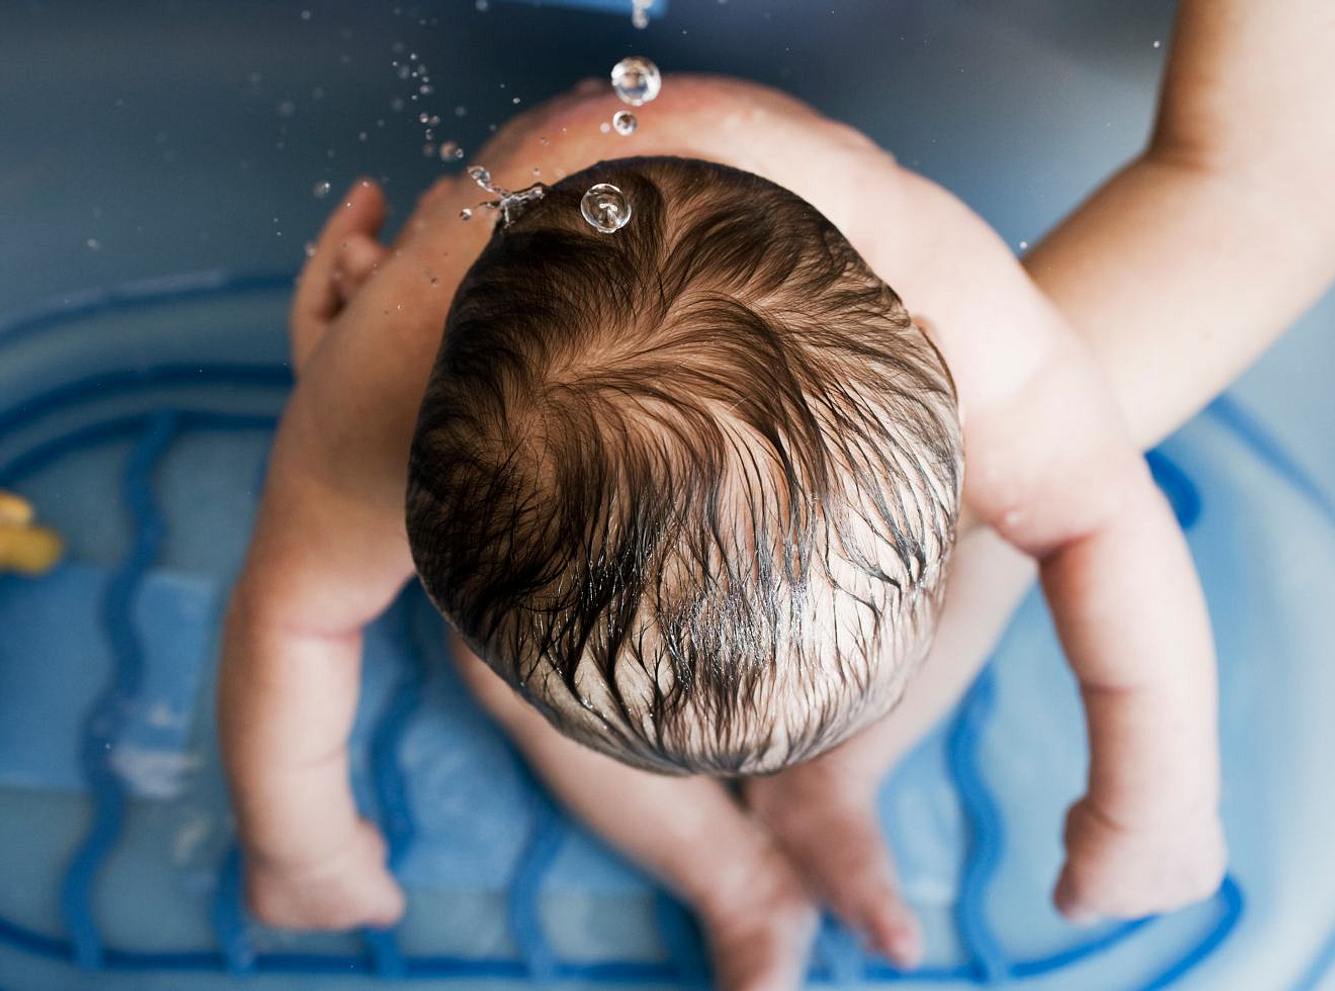 Wasservergiftung: Baby trinkt Badewasser - Mutter warnt vor Gefahr